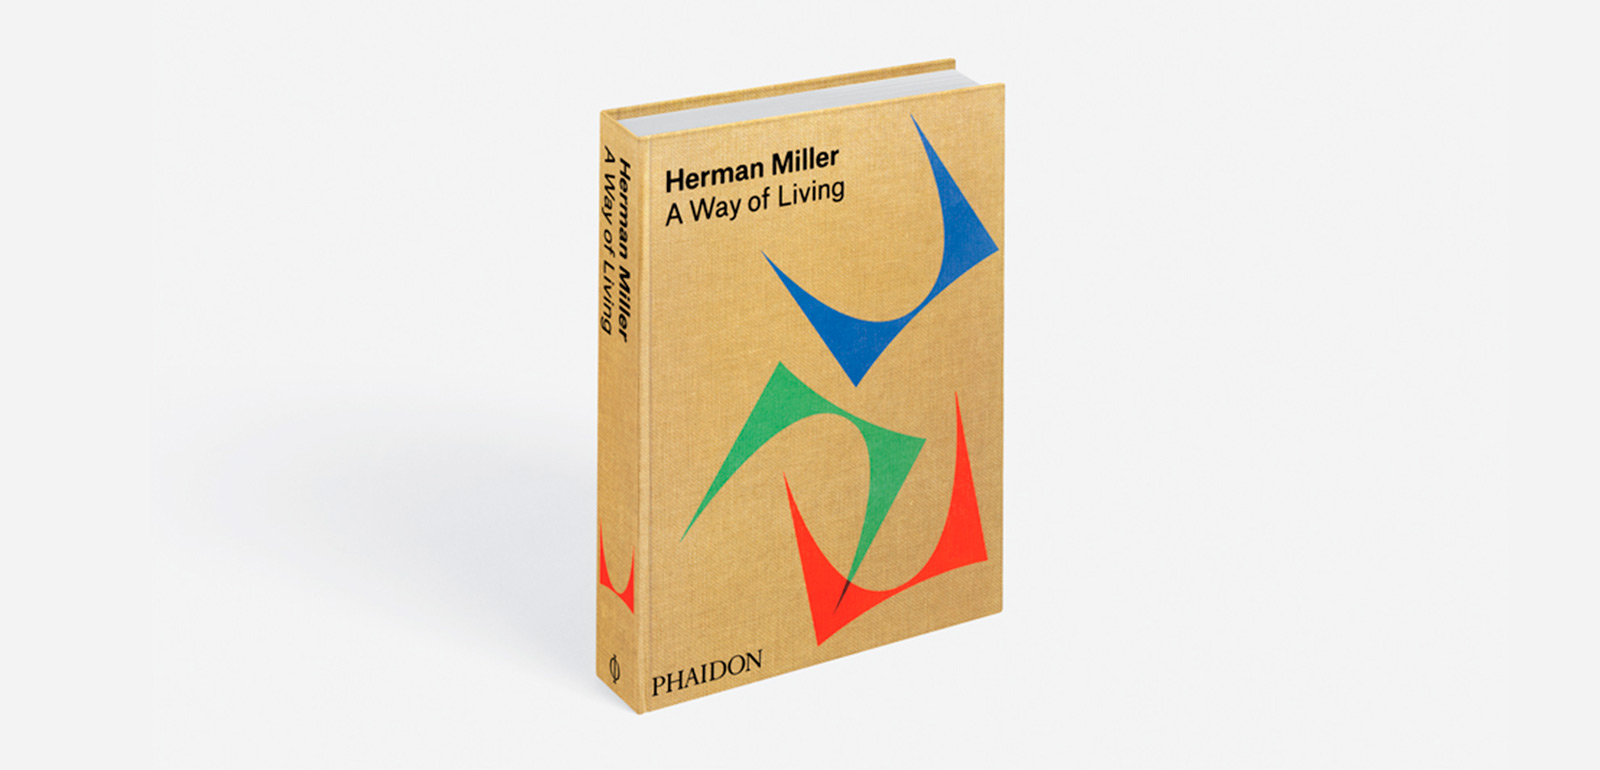 Herman Miller: A Way of Living' by Auscherman, Grawe, & Ransmeier